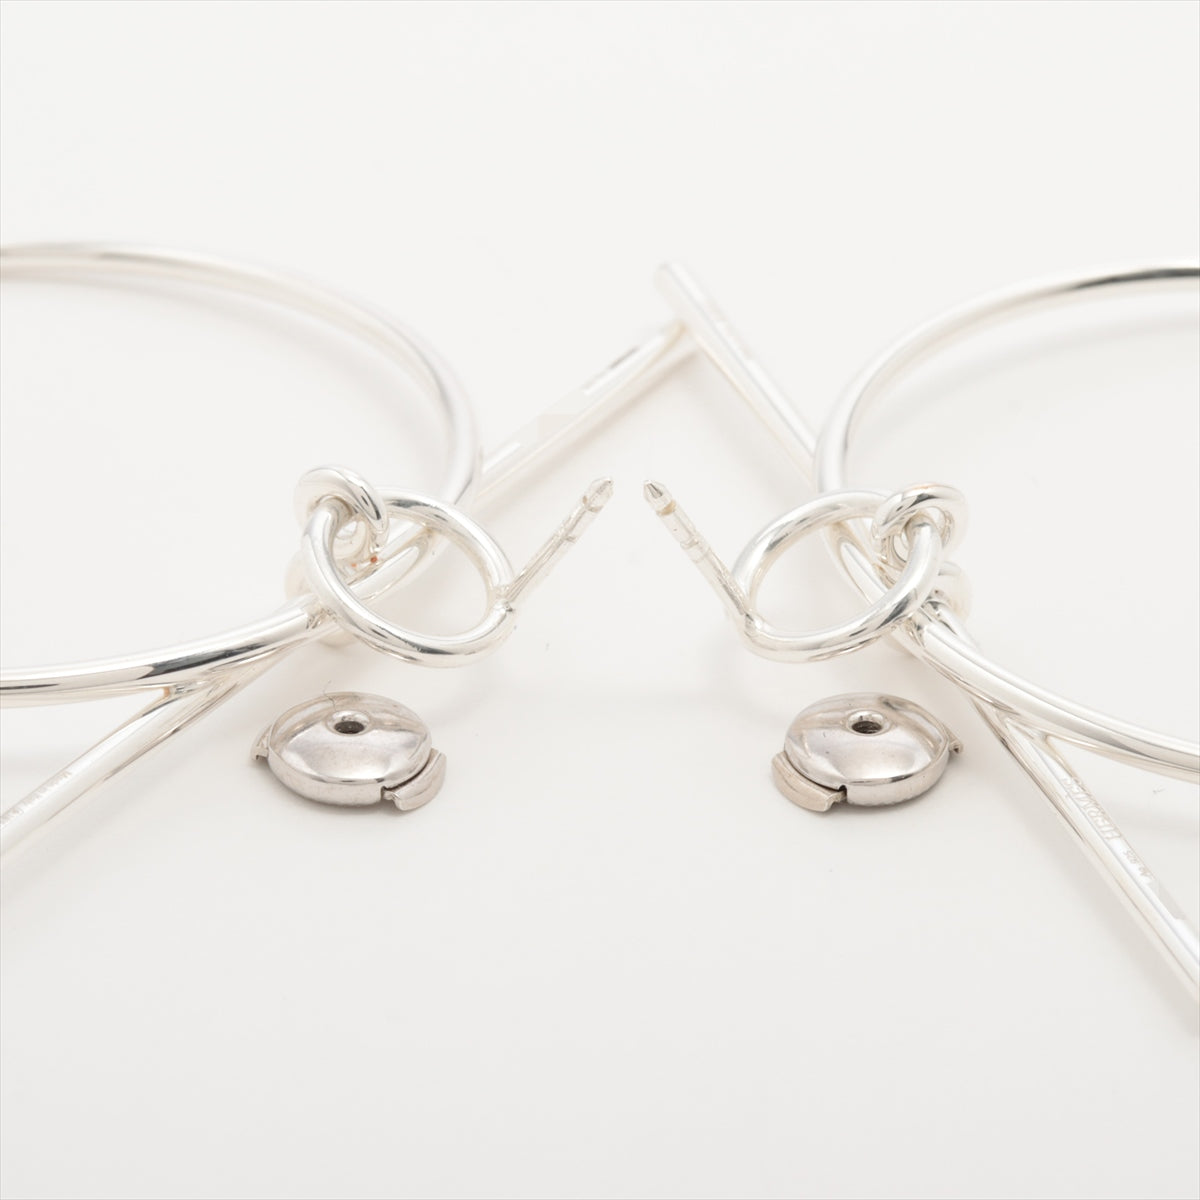 Hermès Loop midium Piercing jewelry (for both ears) 925 11.6g Silver